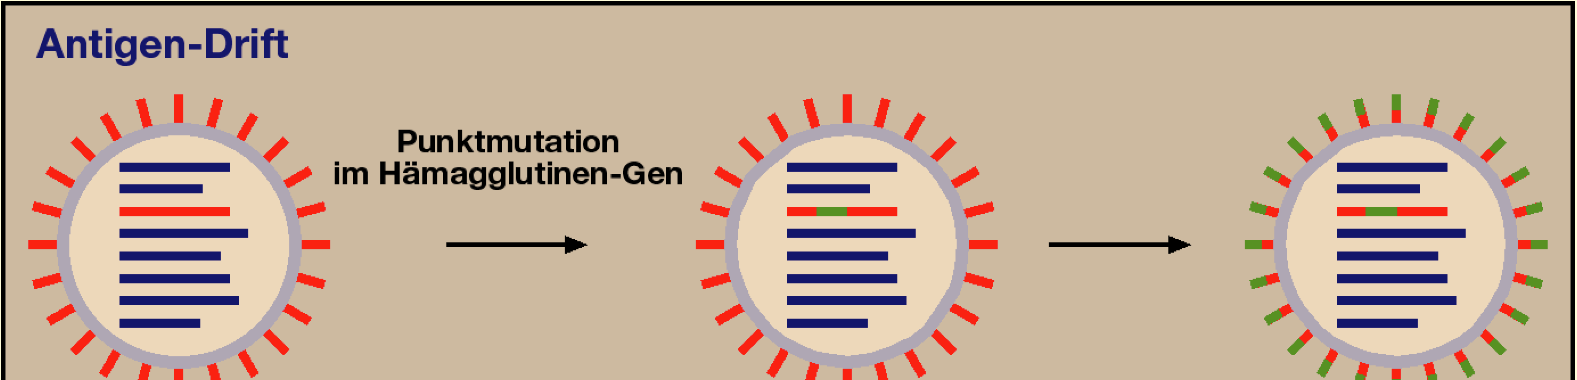 Ätiologie (4): - das Genom dieses RNS-Virus unterliegt einer hohen Mutationsrate - Änderungen im